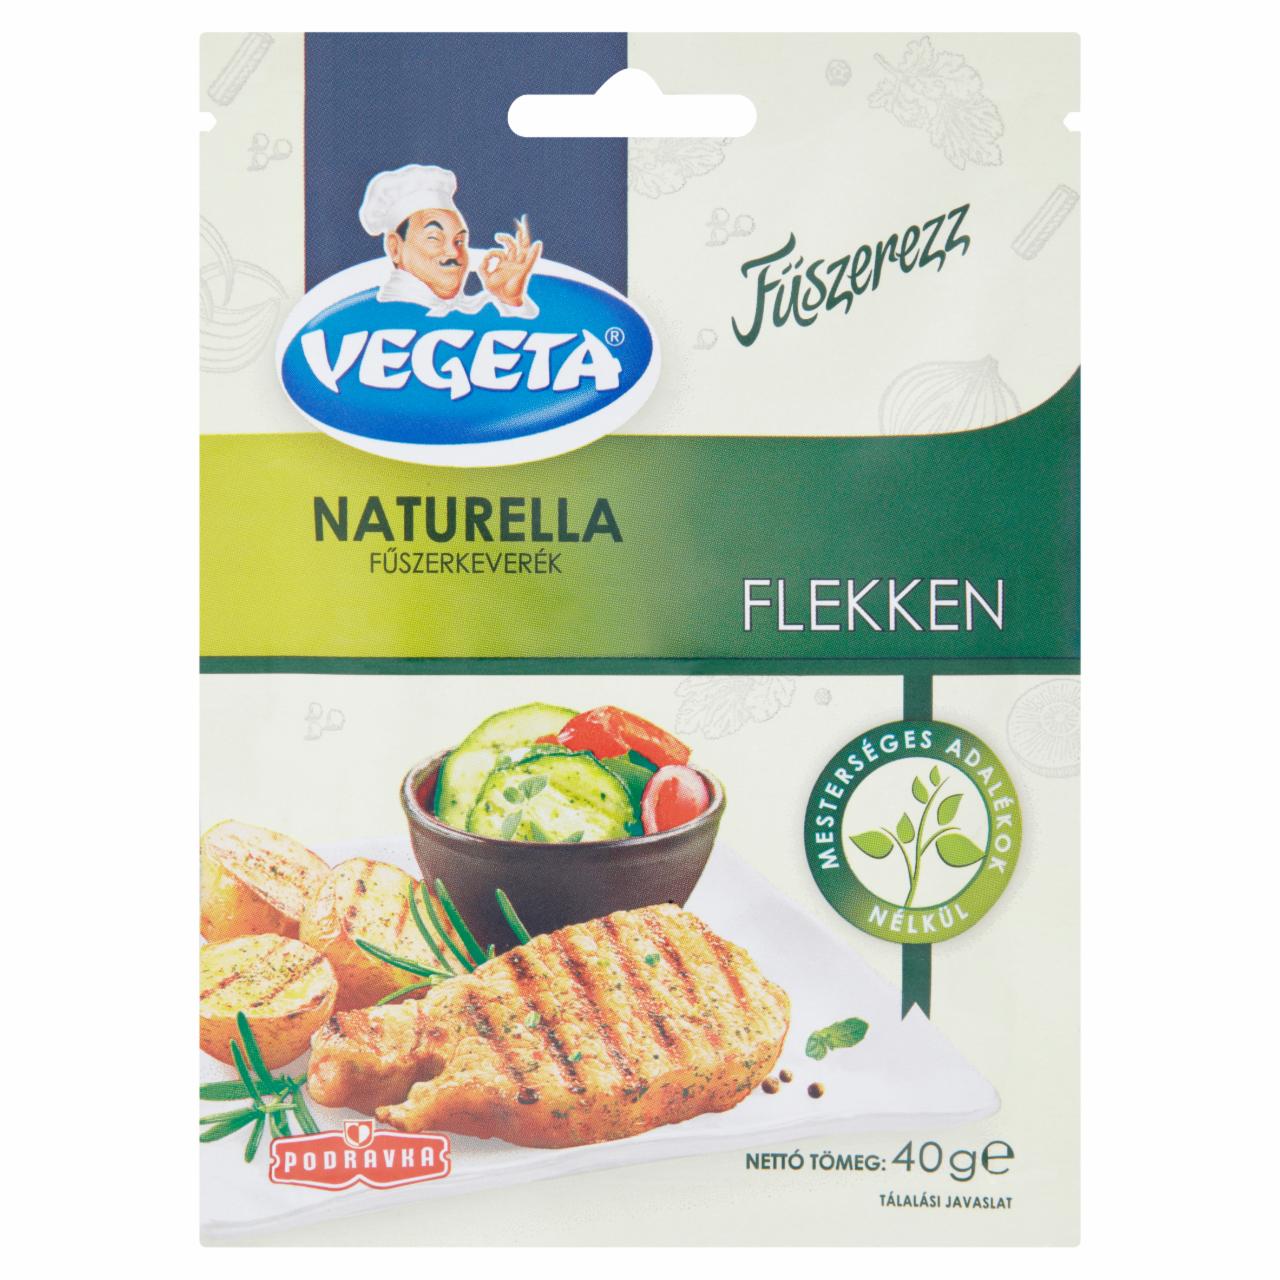 Képek - Vegeta Naturella flekken fűszerkeverék 40 g